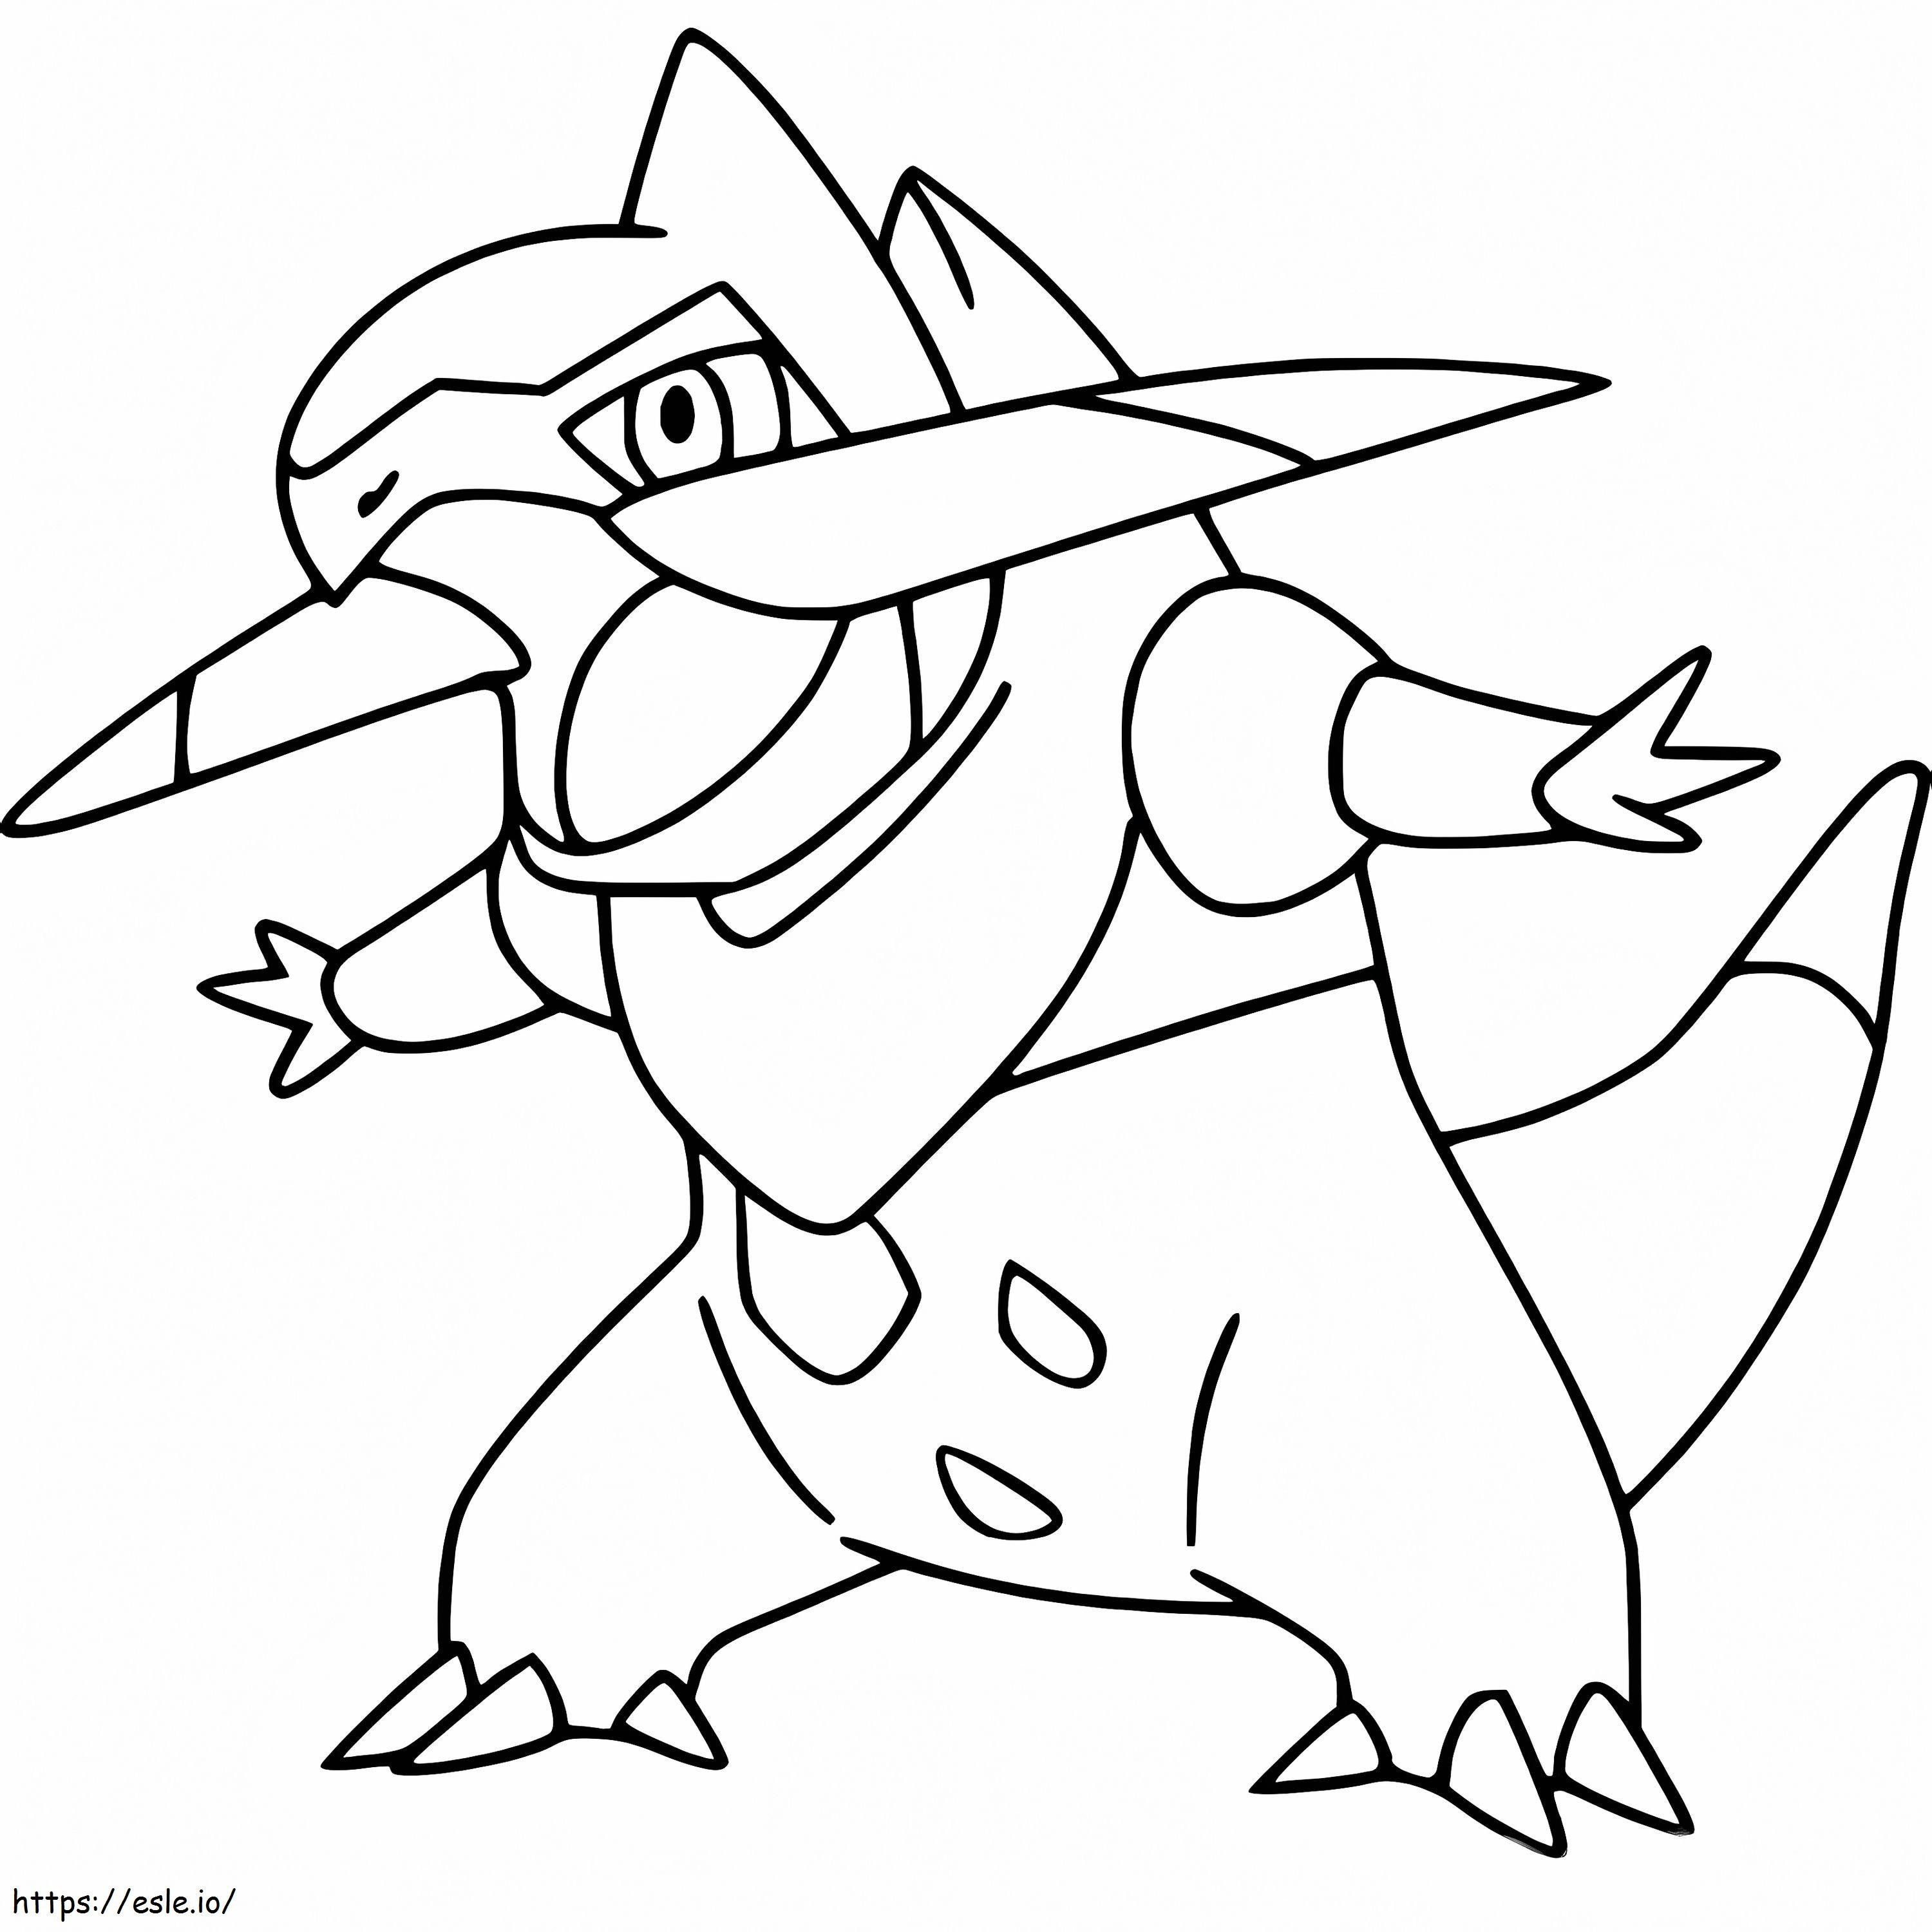 Fraxure Gen 5 Pokémon ausmalbilder